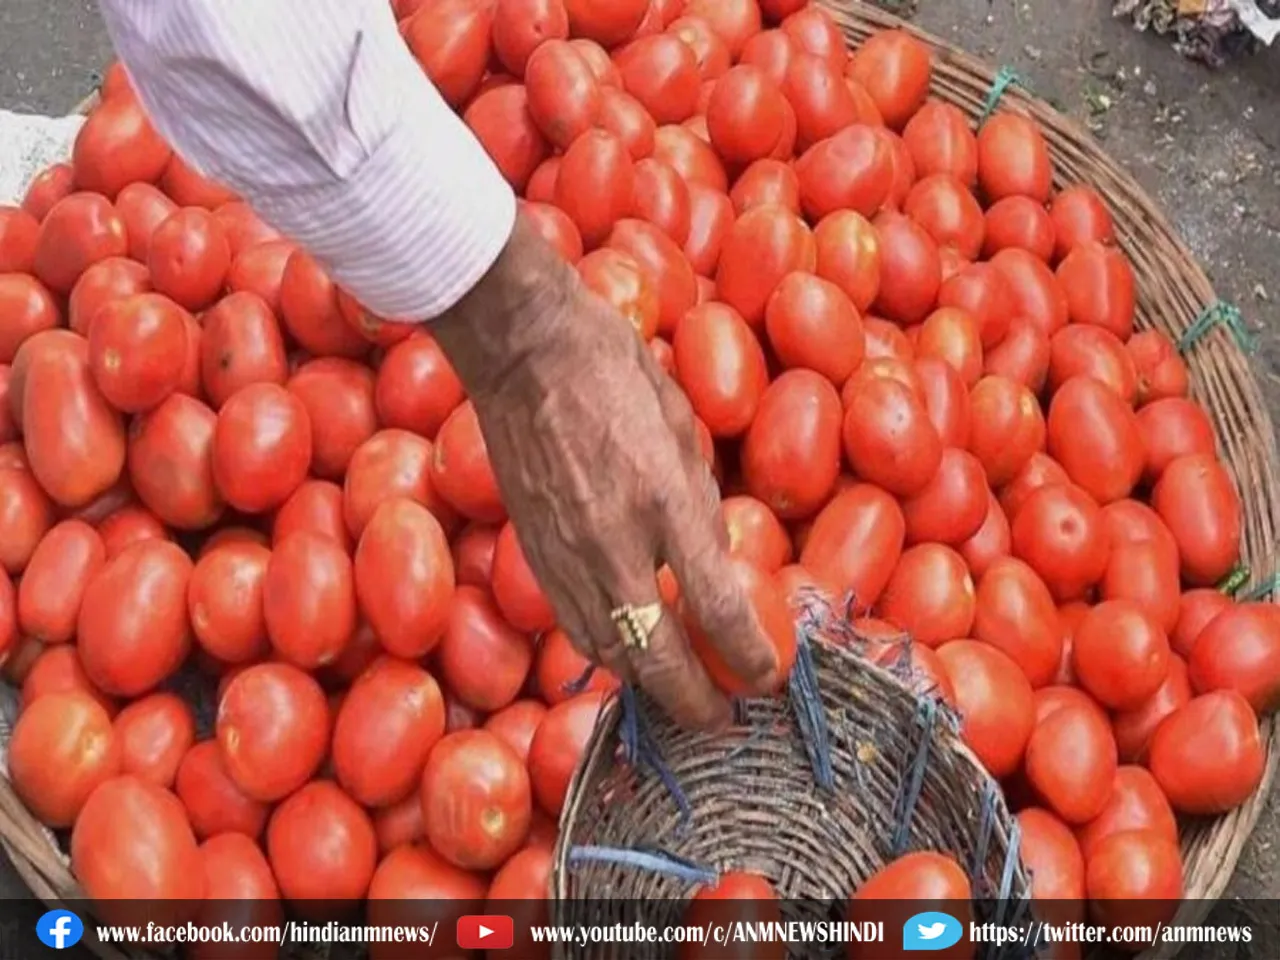 Price of tomato